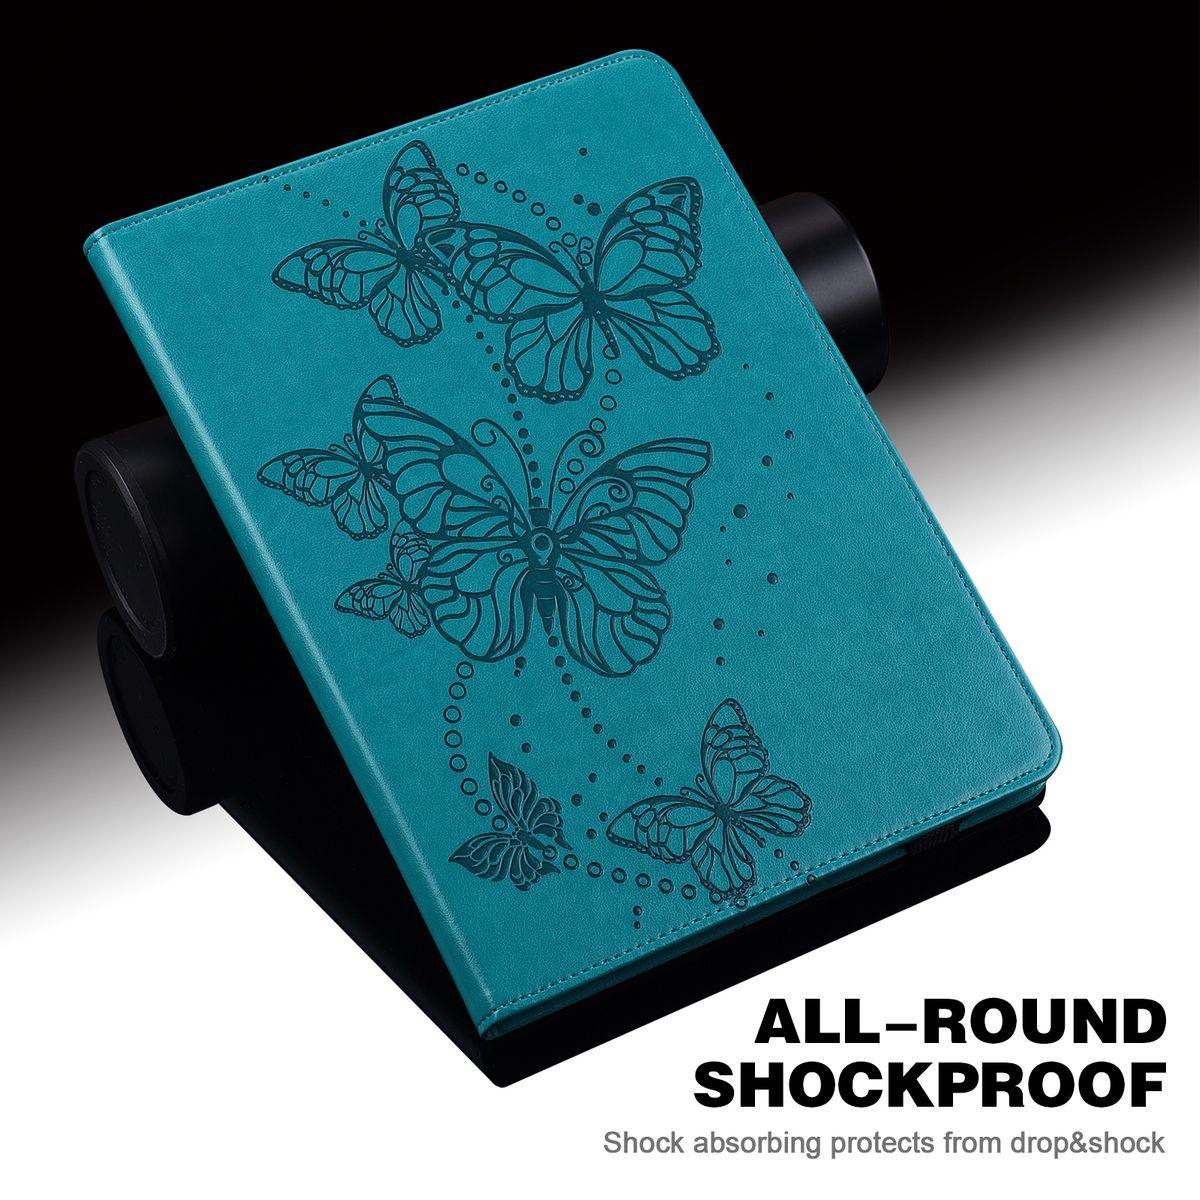 WIGENTO Aufstellbare Pad / Tasche Schmetterling Redmi SE Motiv, 2 11 Kunst-Leder Xiaomi, Zoll, Bookcover, Blau